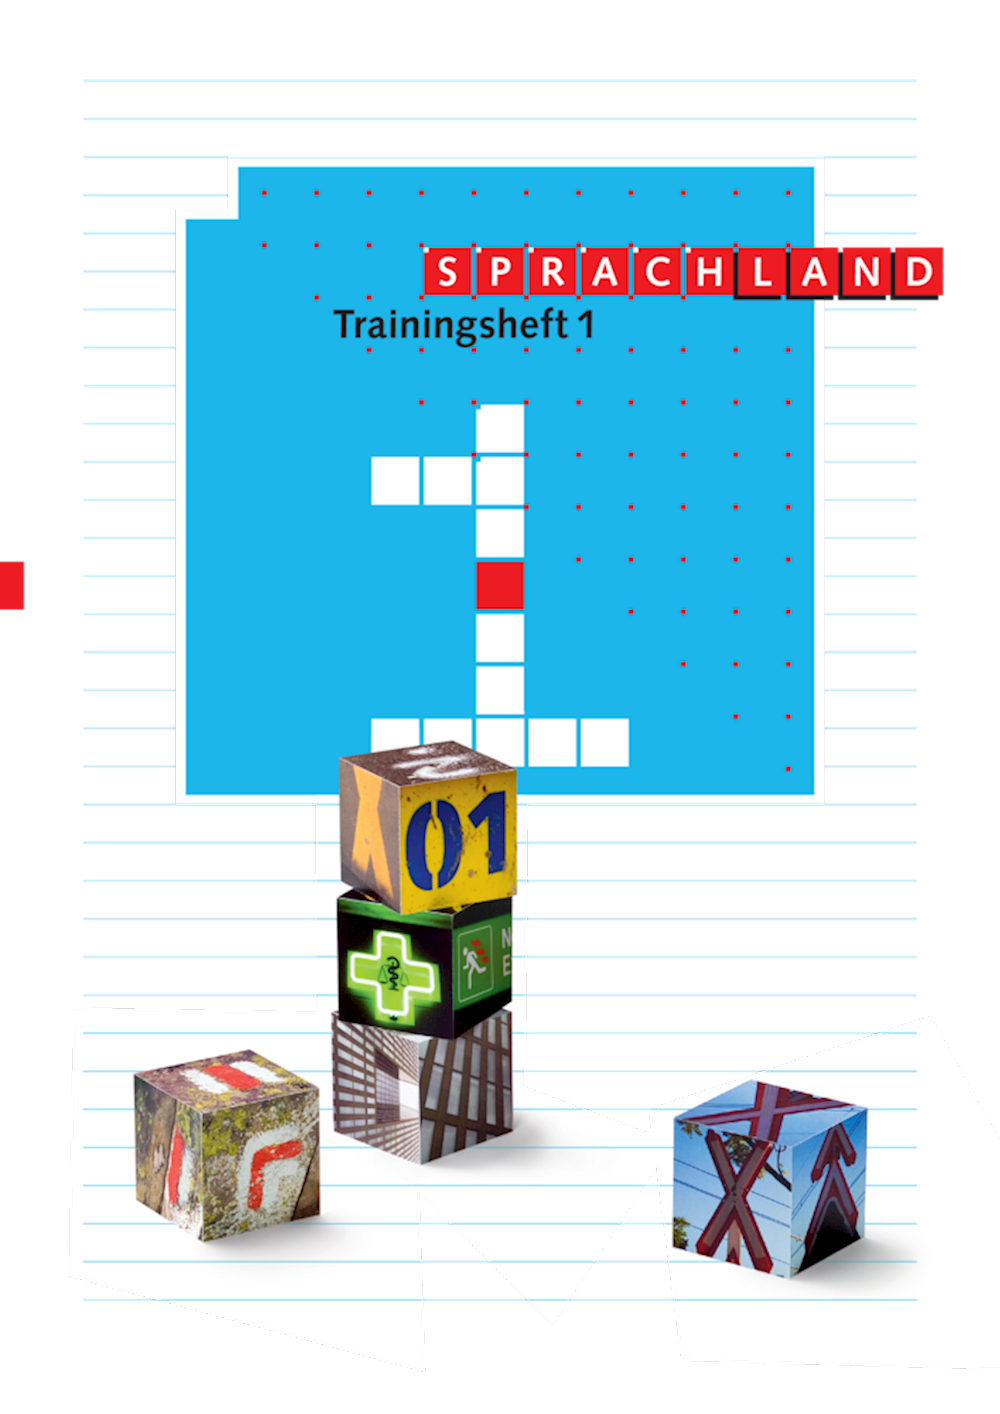 Sprachland Trainingsheft 1